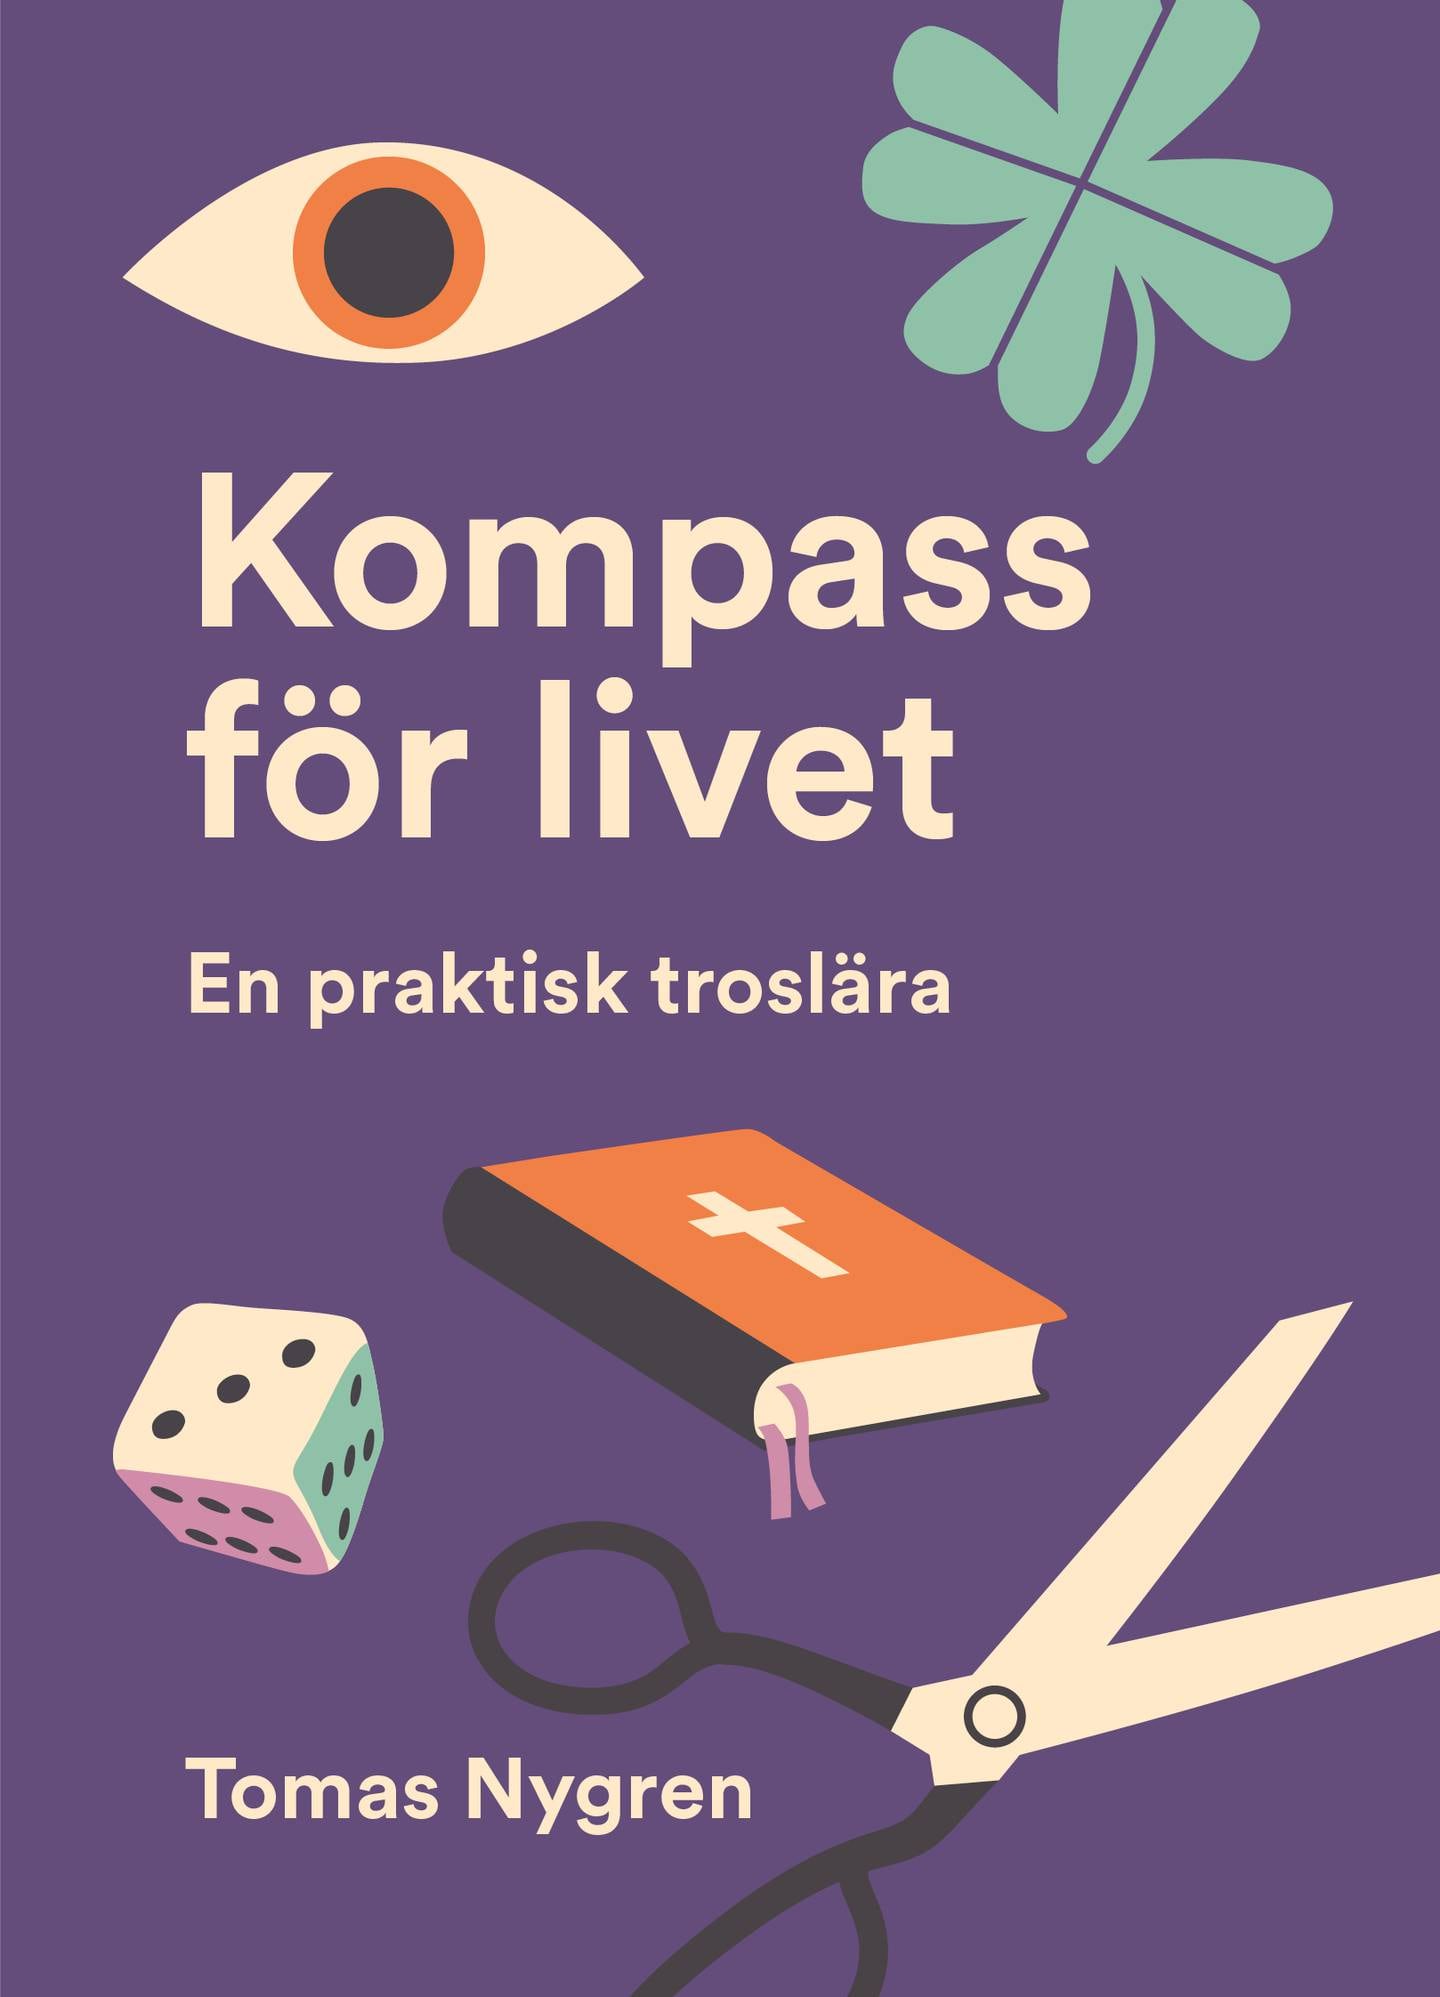 "Kompass för livet" av Tomas Nygren.